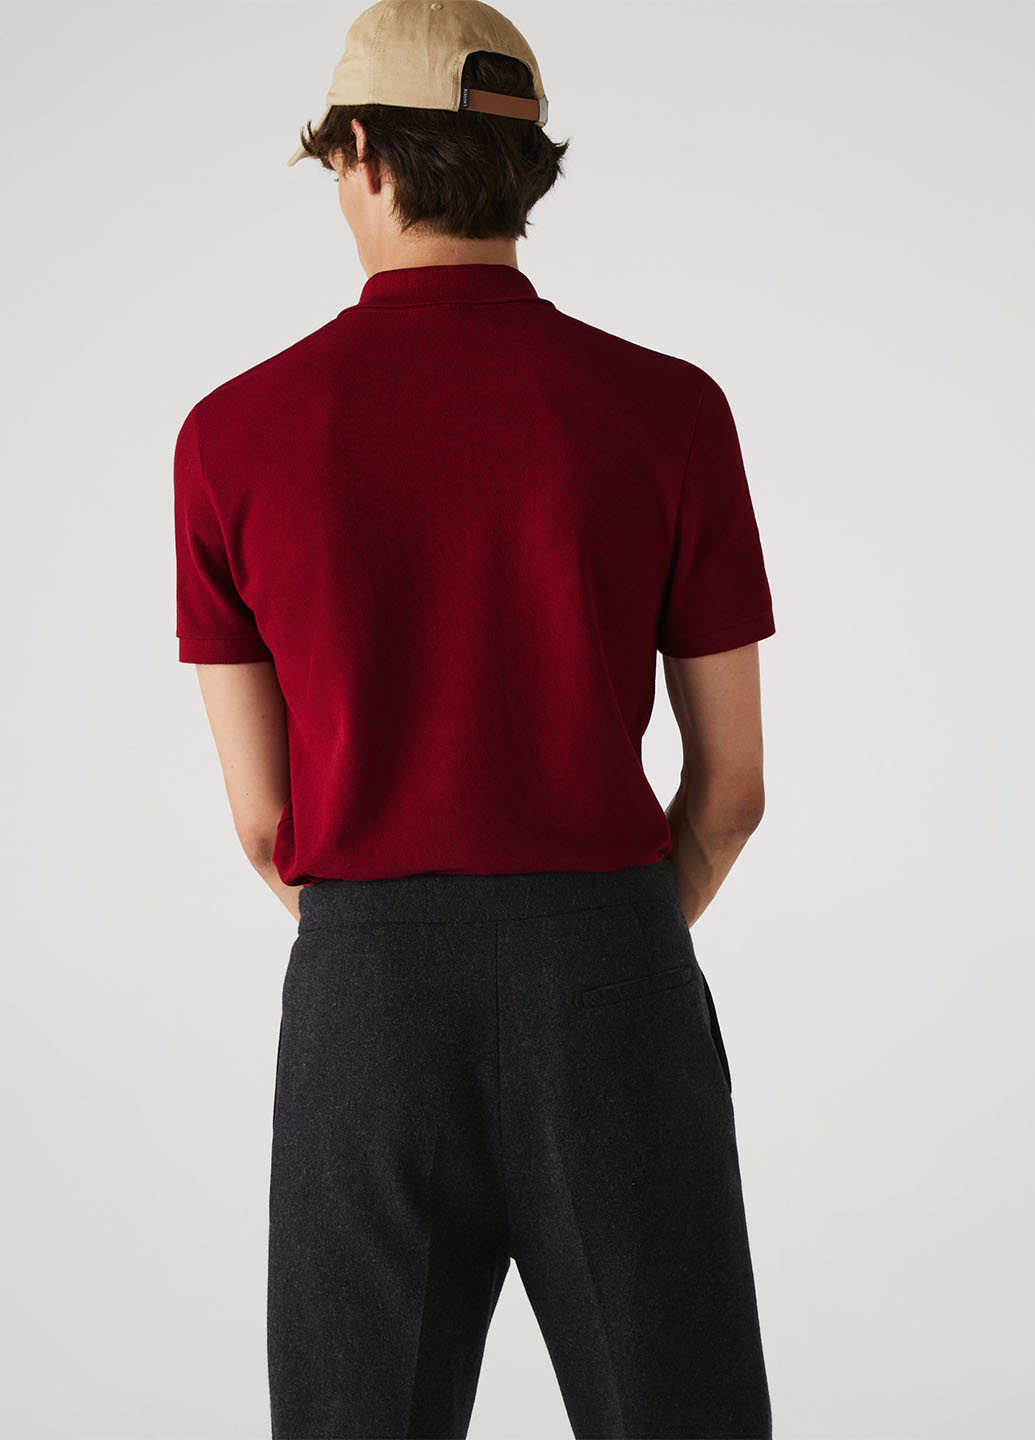 Бордовая футболка-поло для мужчин Lacoste однотонная